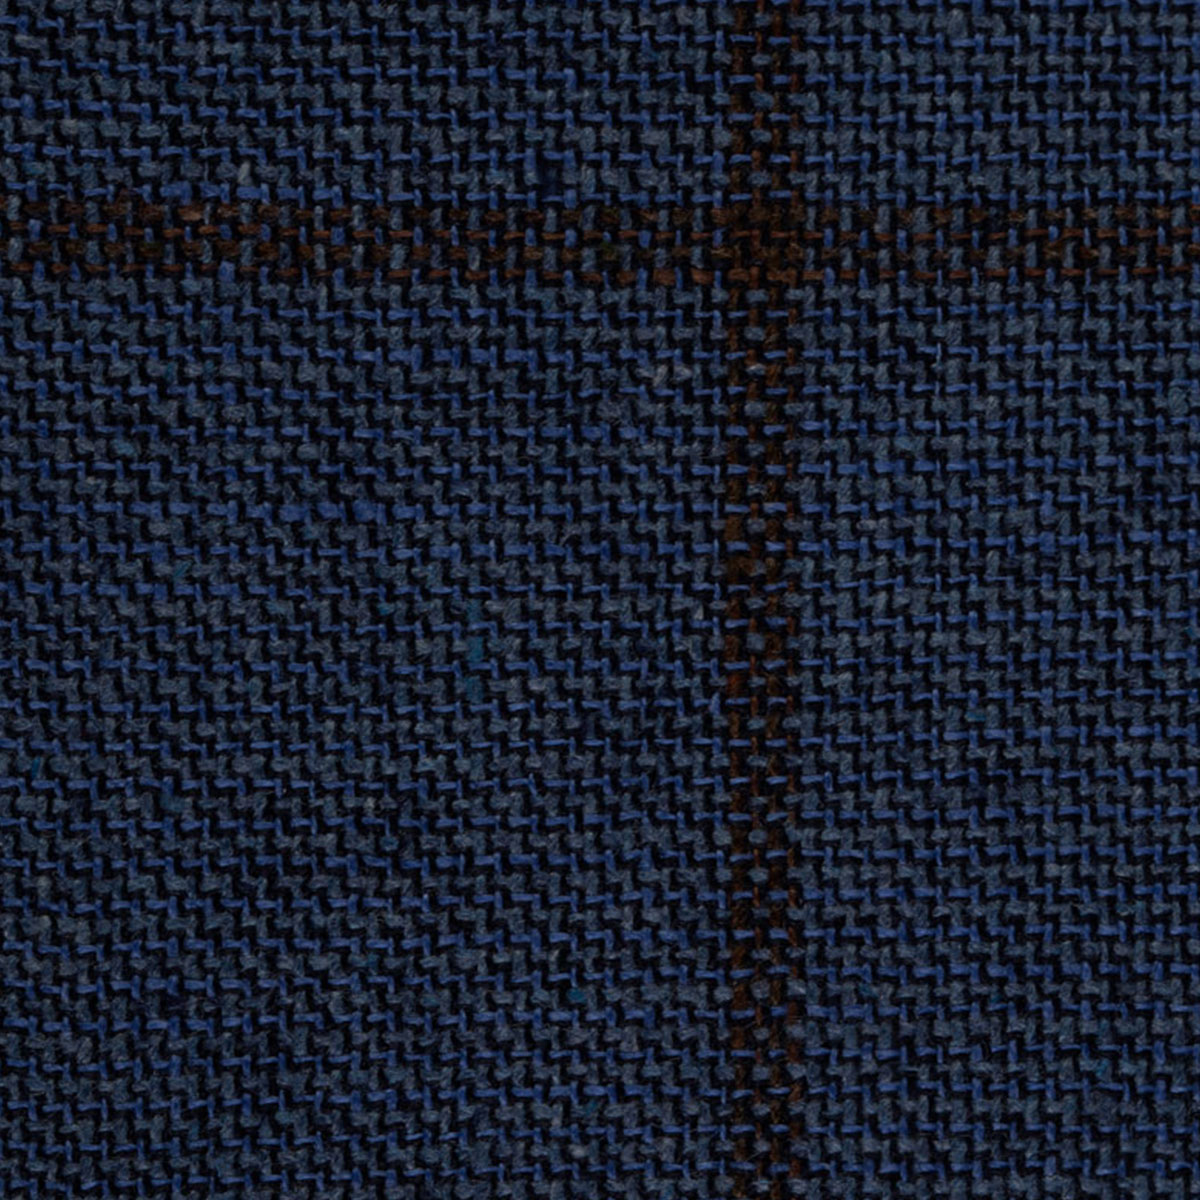 Fensterkaro-Muster in dunkelblau mit braun